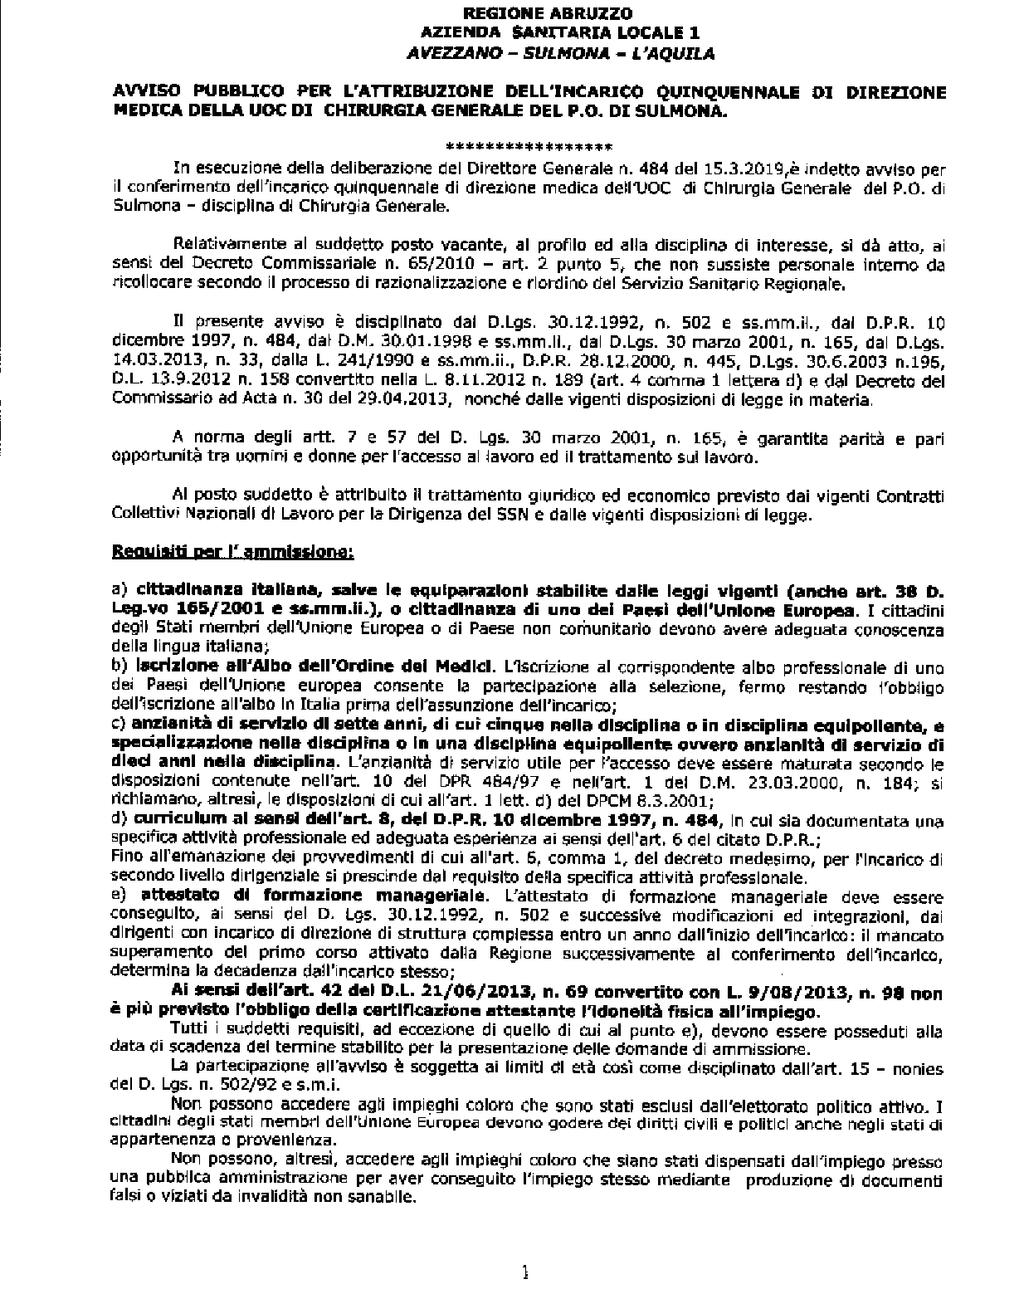 Pag. 18 Bollettino Ufficiale della Regione Abruzzo Anno XLIX - N. 76 Speciale (10.05.